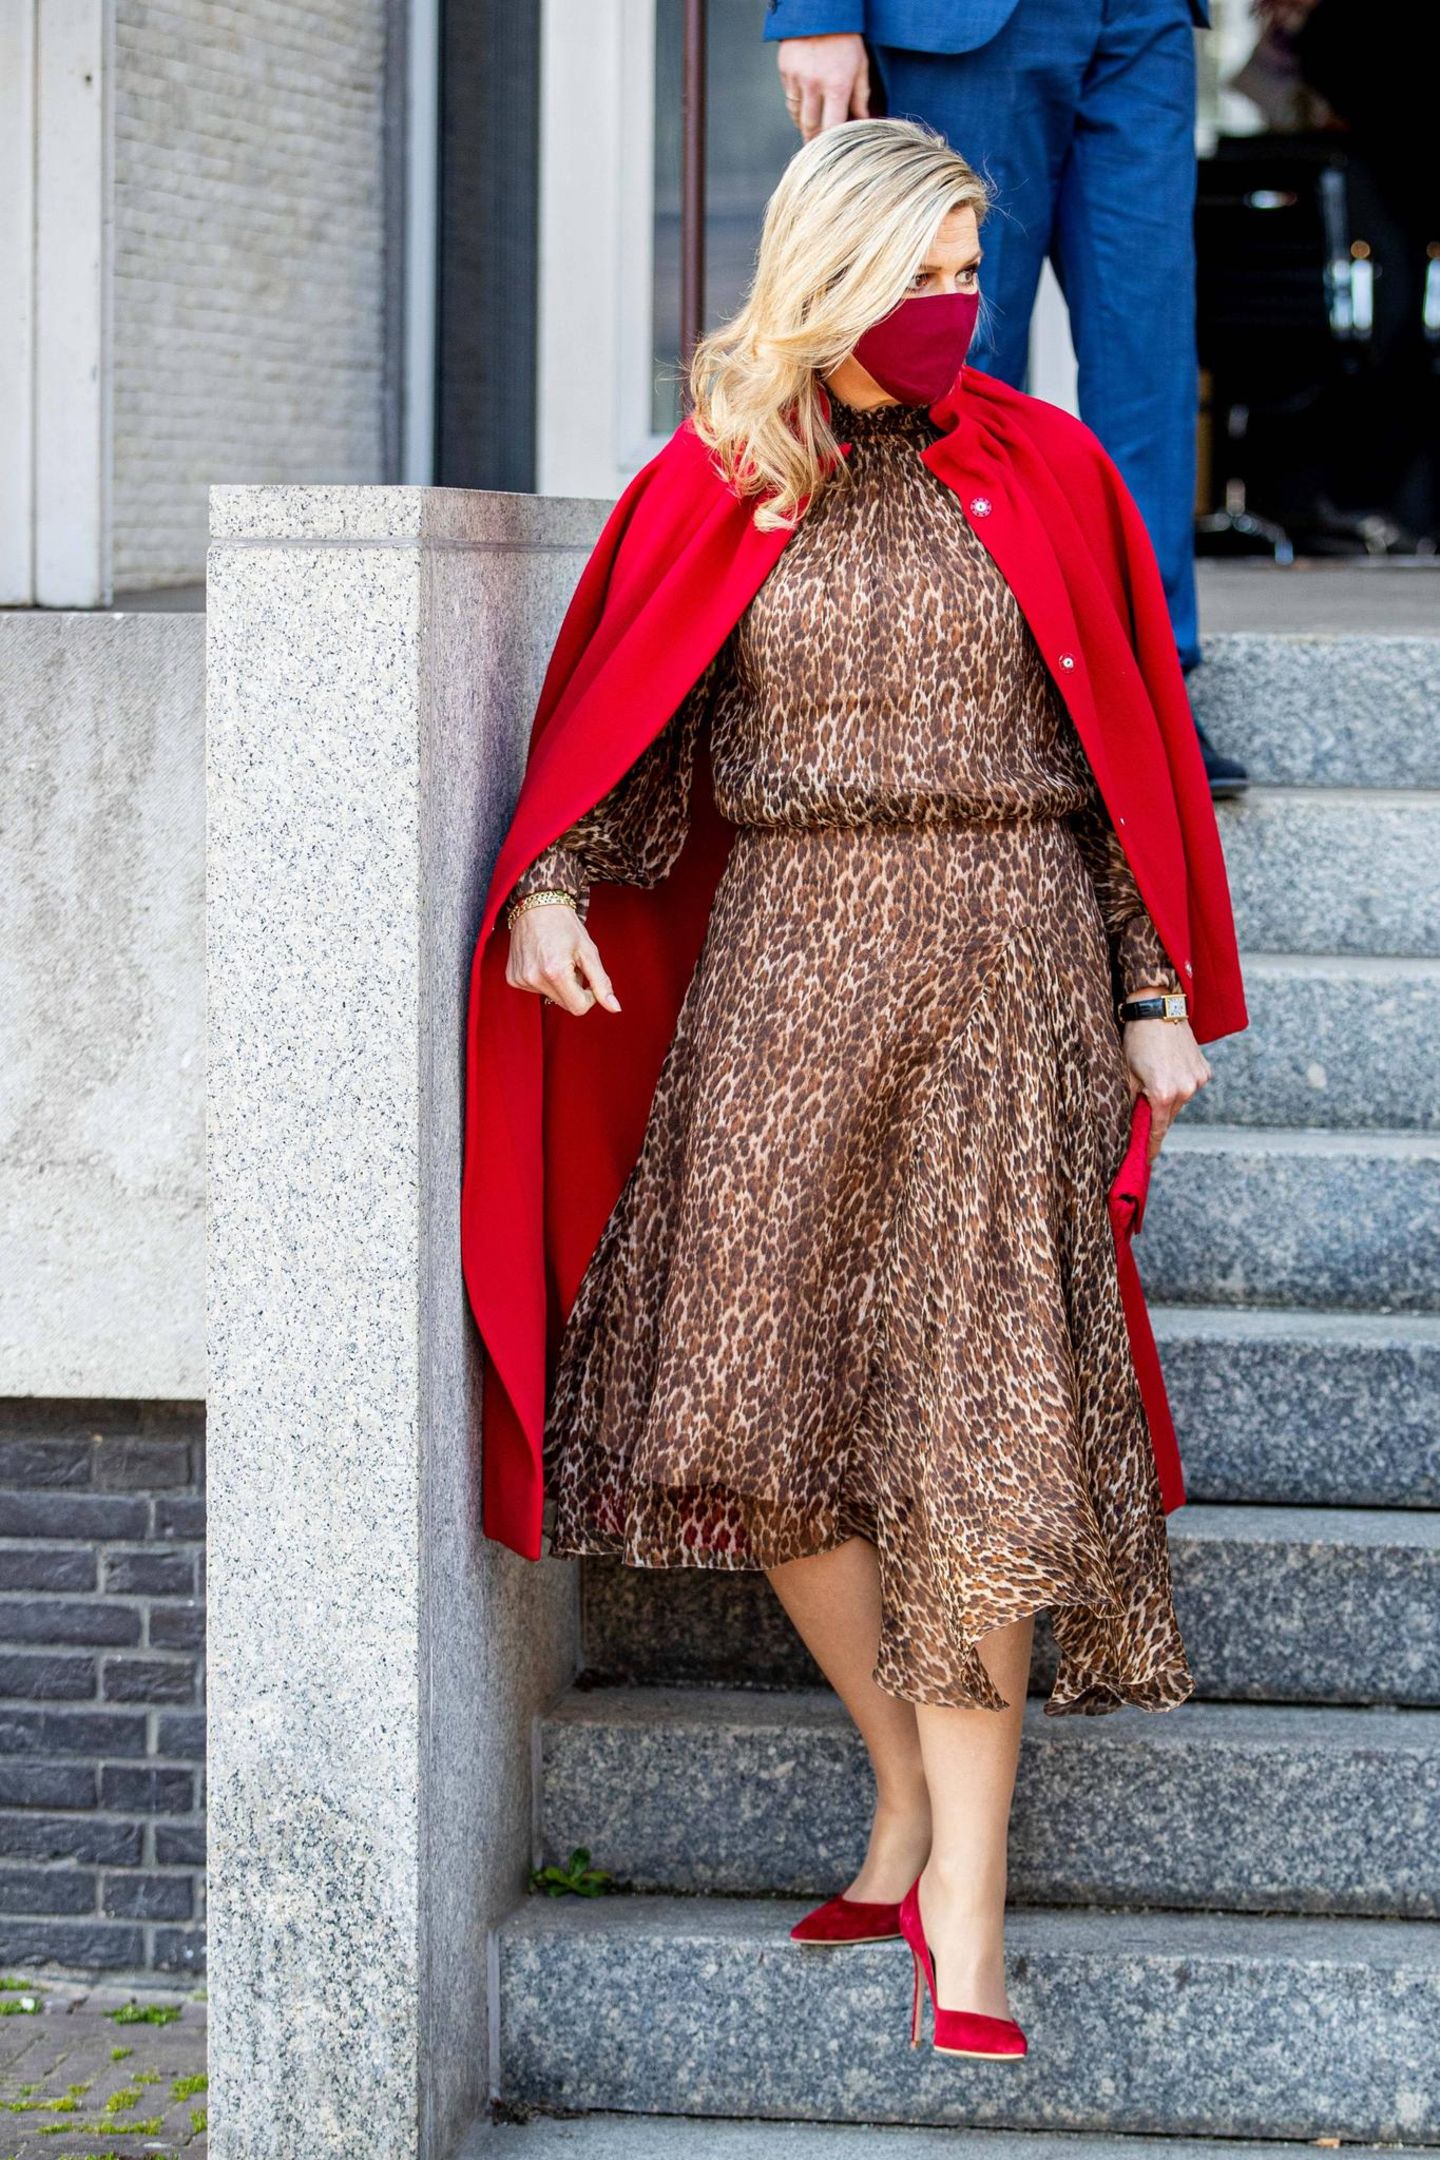 Königin Máxima schafft es, eine Kombi, die sonst fast zu sexy wäre, elegant aussehen zu lassen: Sie trägt ein leichtes Midi-Dress mit Leo-Muster, das an der Taille betont. Darüber hat sie sich einen knallroten Cape-Mantel (beides von Natan Couture) geworfen und ihre roten Pumps perfekt abgestimmt. 